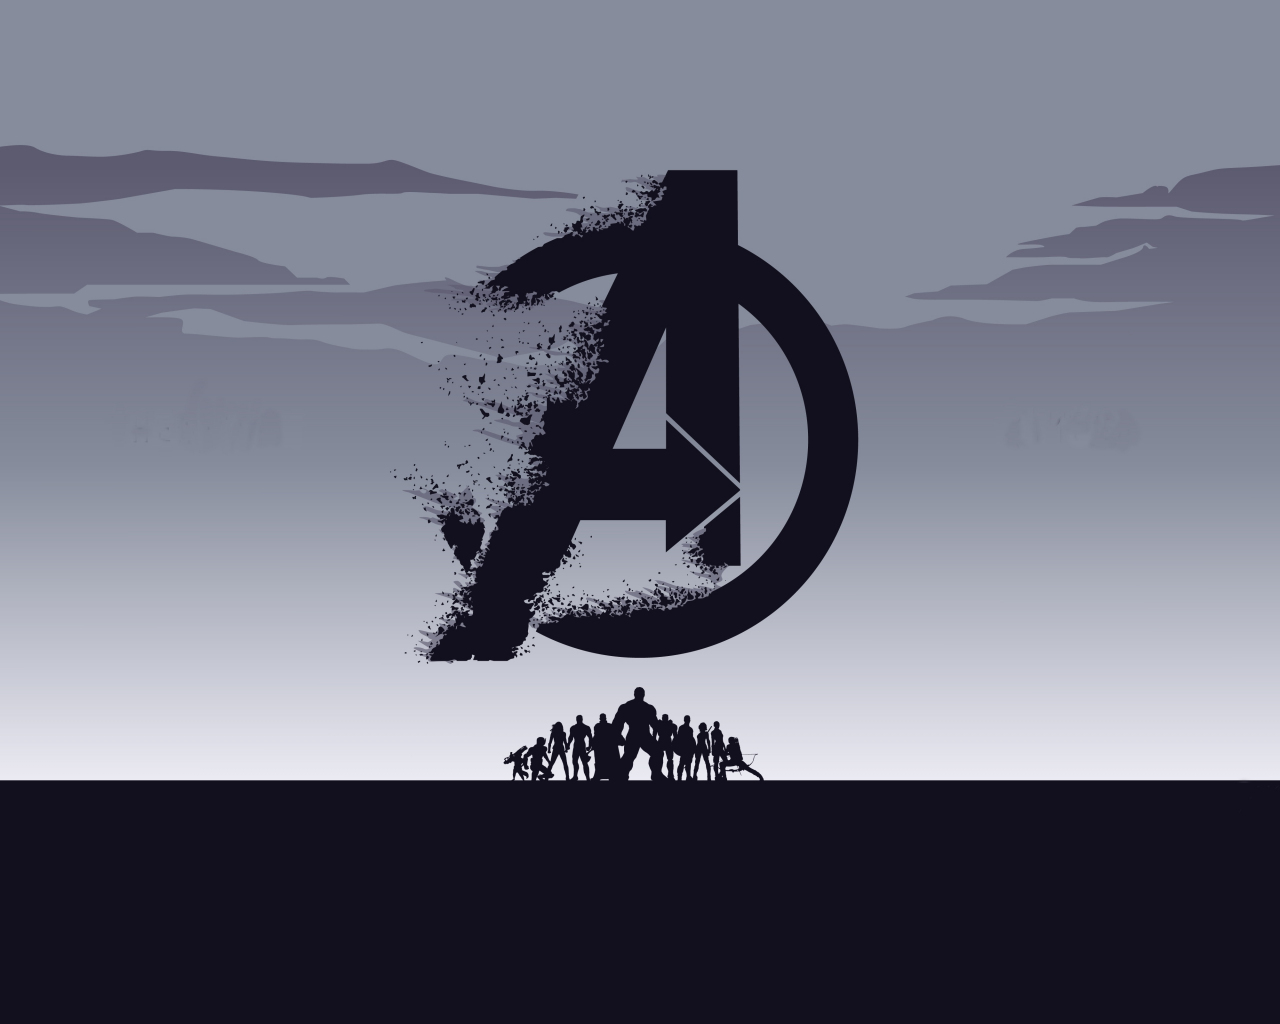 2019 movie, Avengers: Endgame, minimal, silhouette, art, 1280x1024 wallpaper